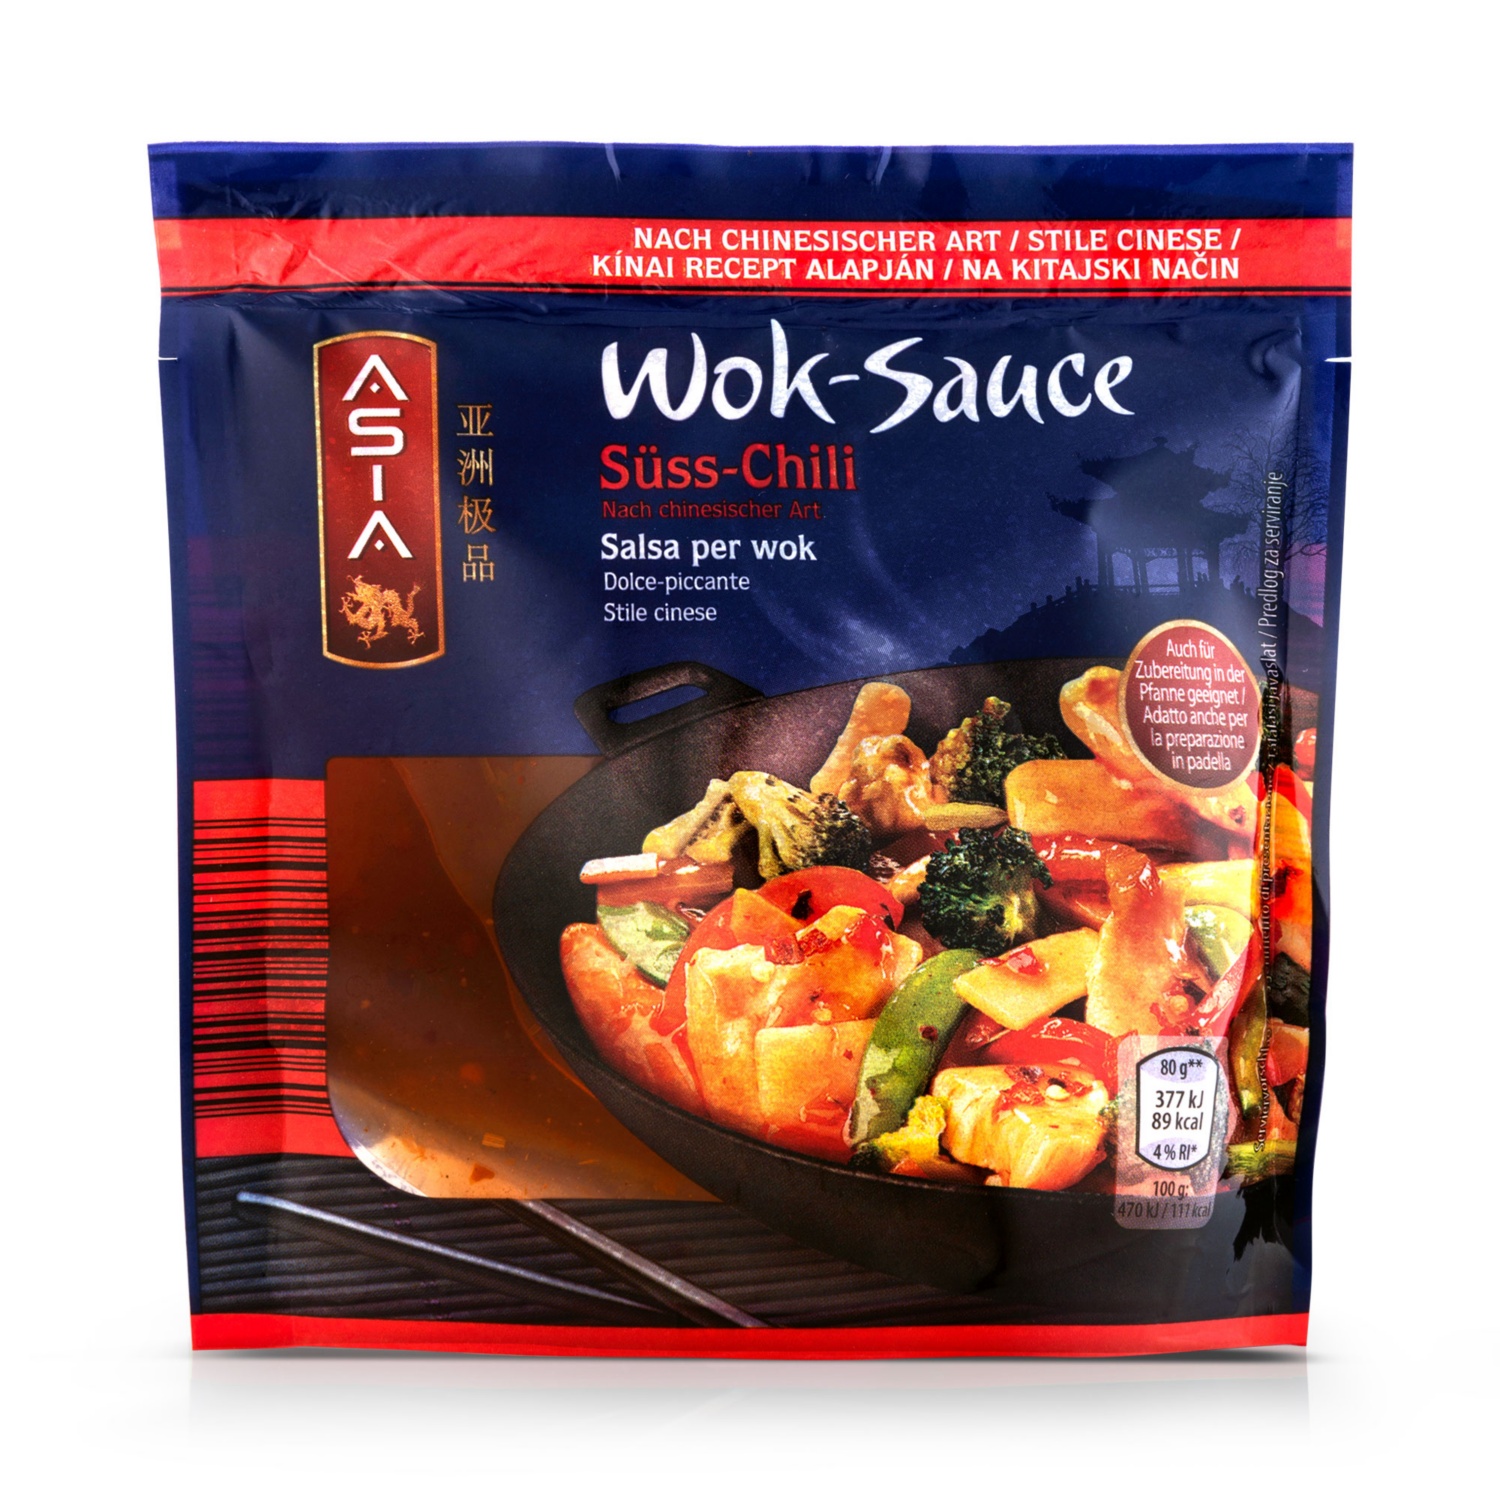 ASIA Wok-Sauce, Süß-Chili